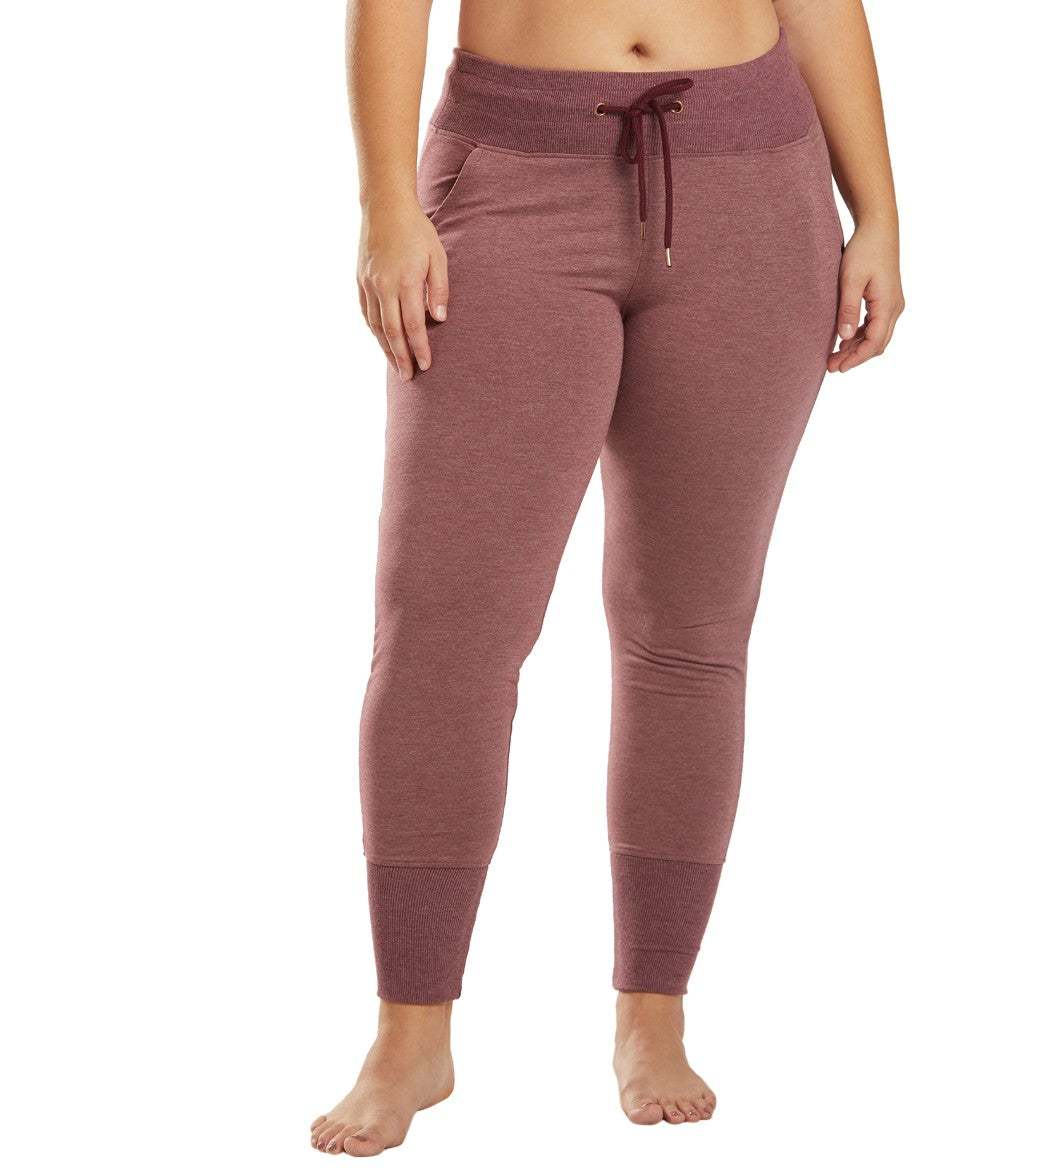 GAIAM Multi Color Purple Active Pants Size M - 50% off